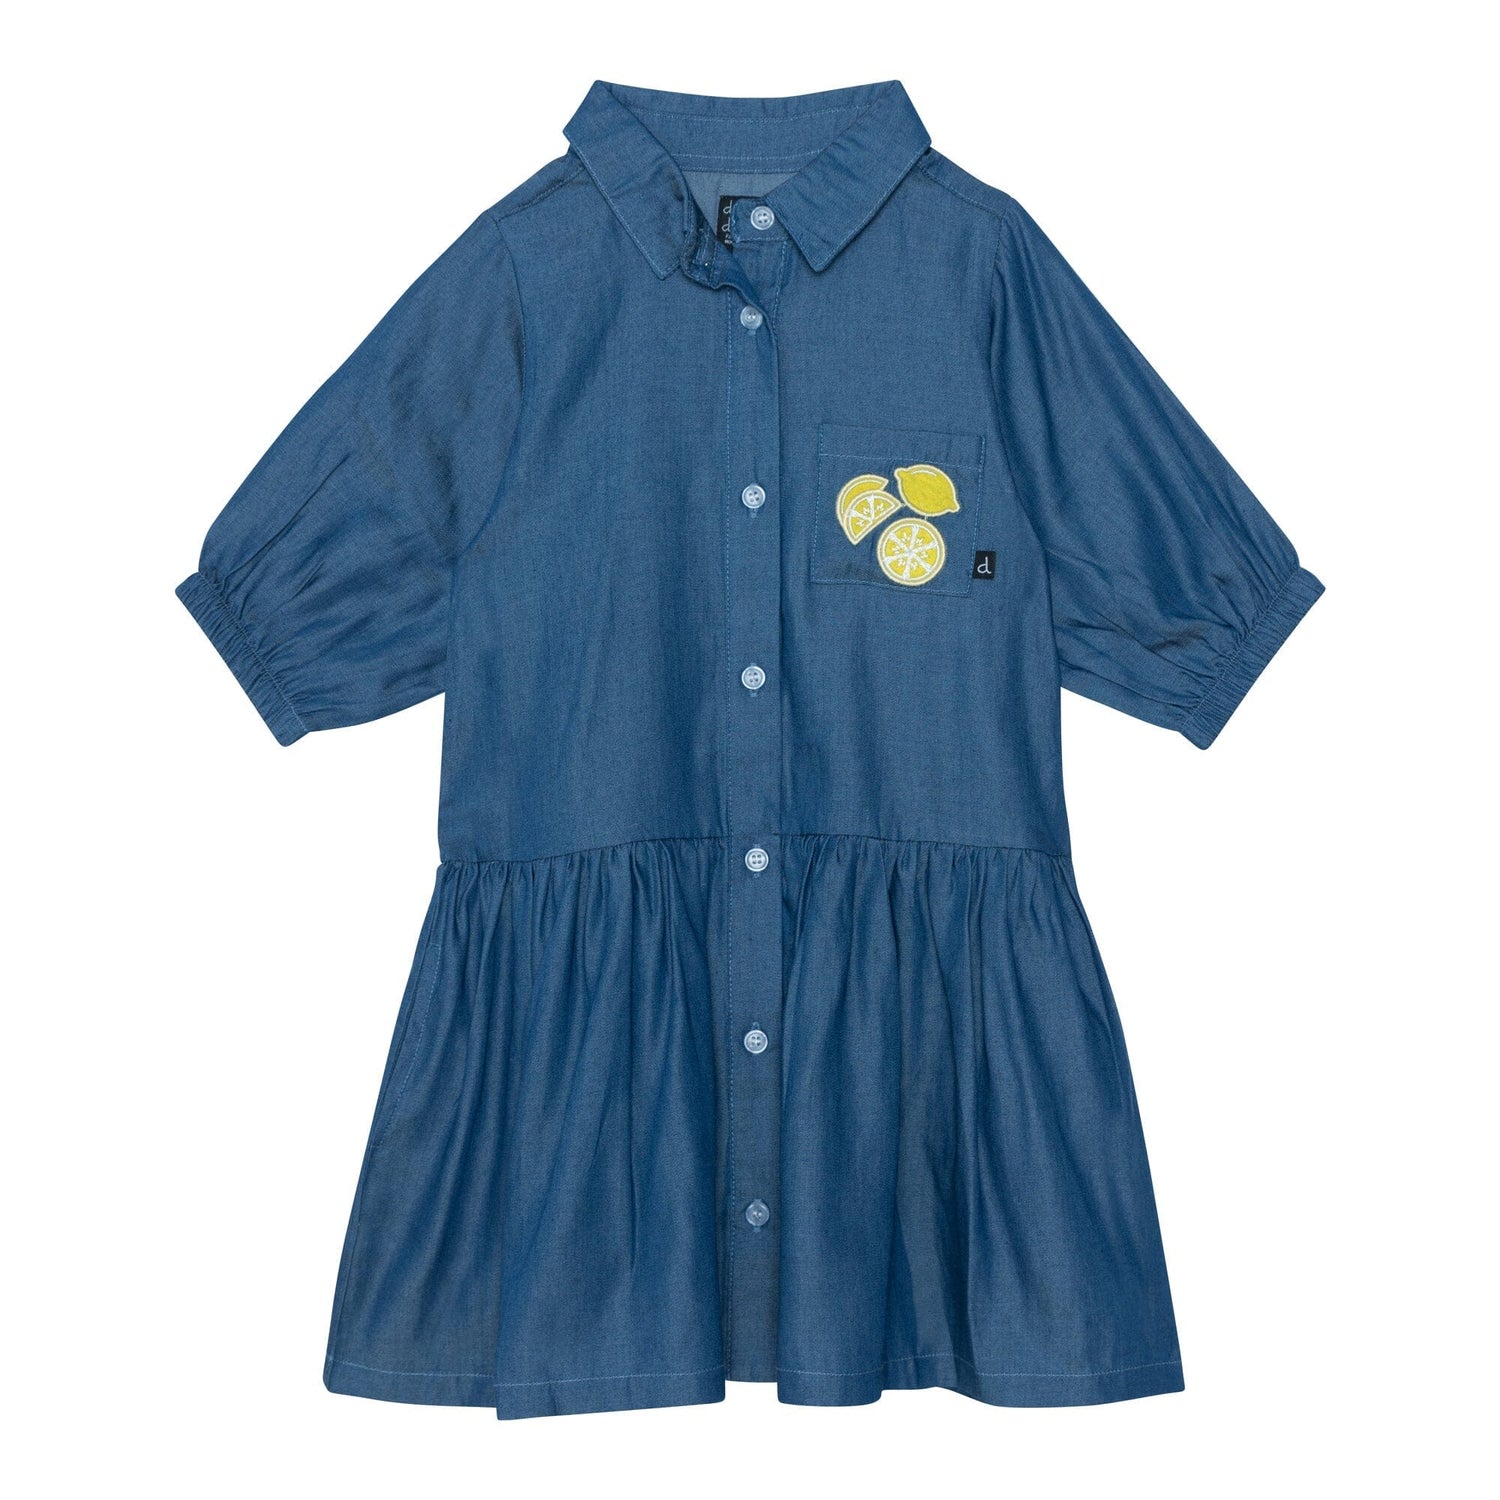 3/4 Sleeve Dress With Pocket Blue Chambray - E30I92_098